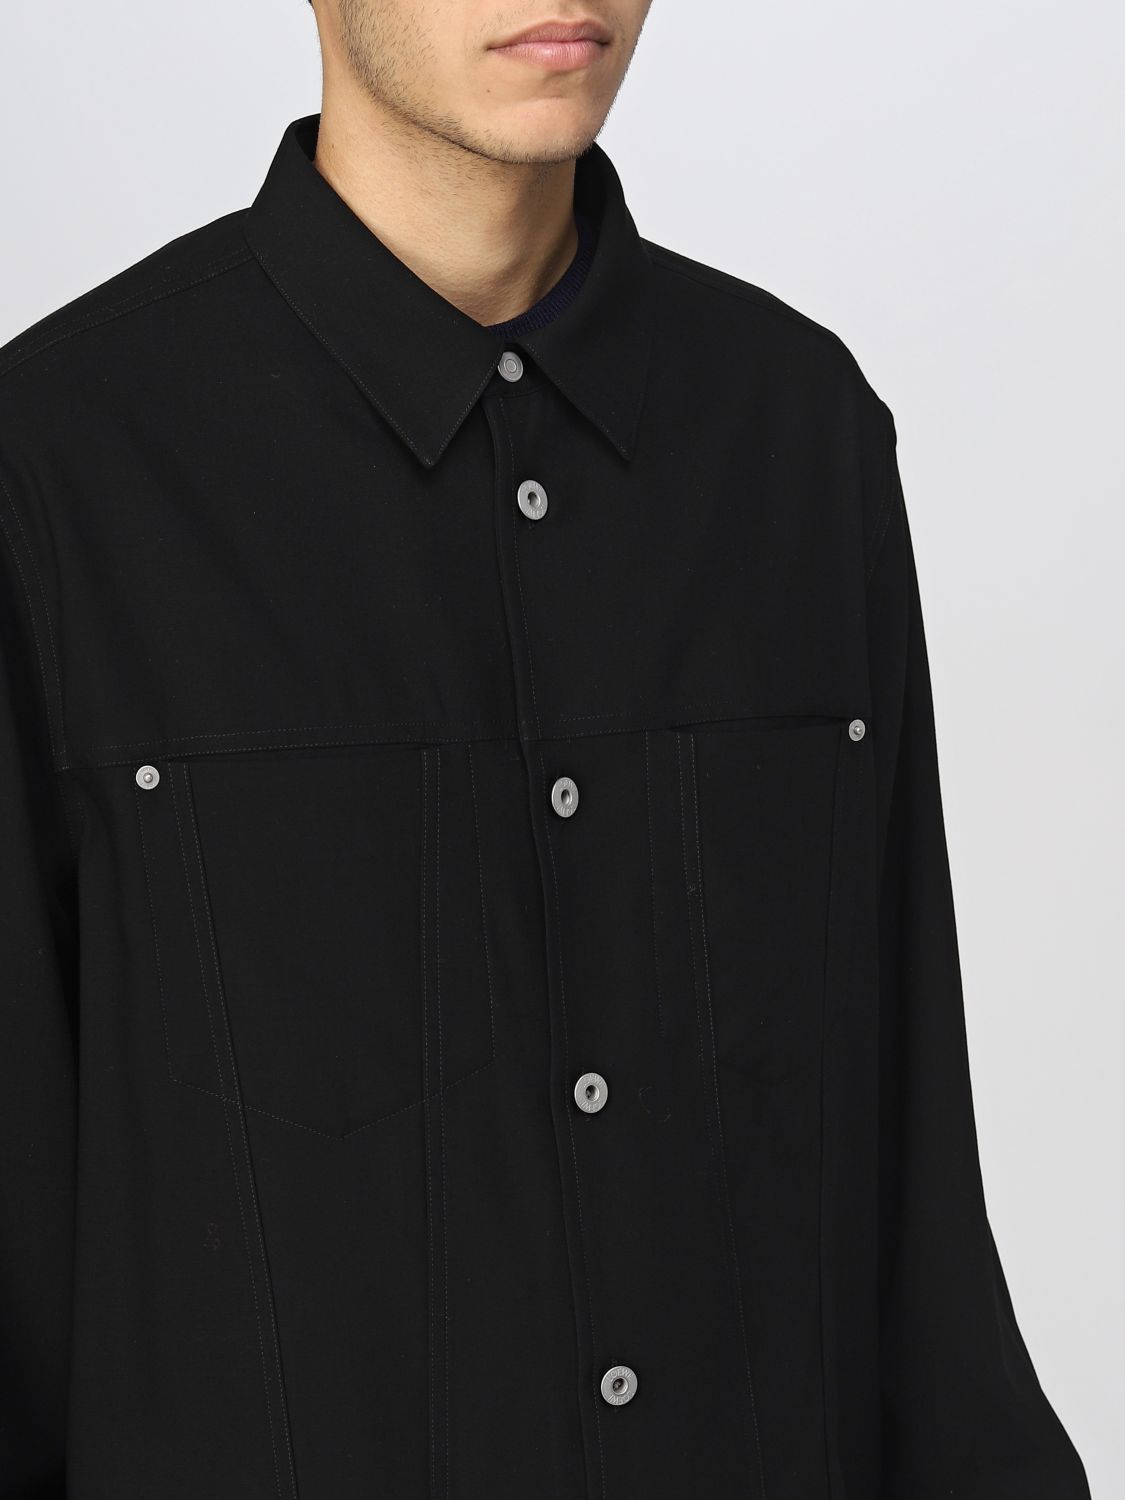 Jacket Loewe: Loewe jacket for men black 5